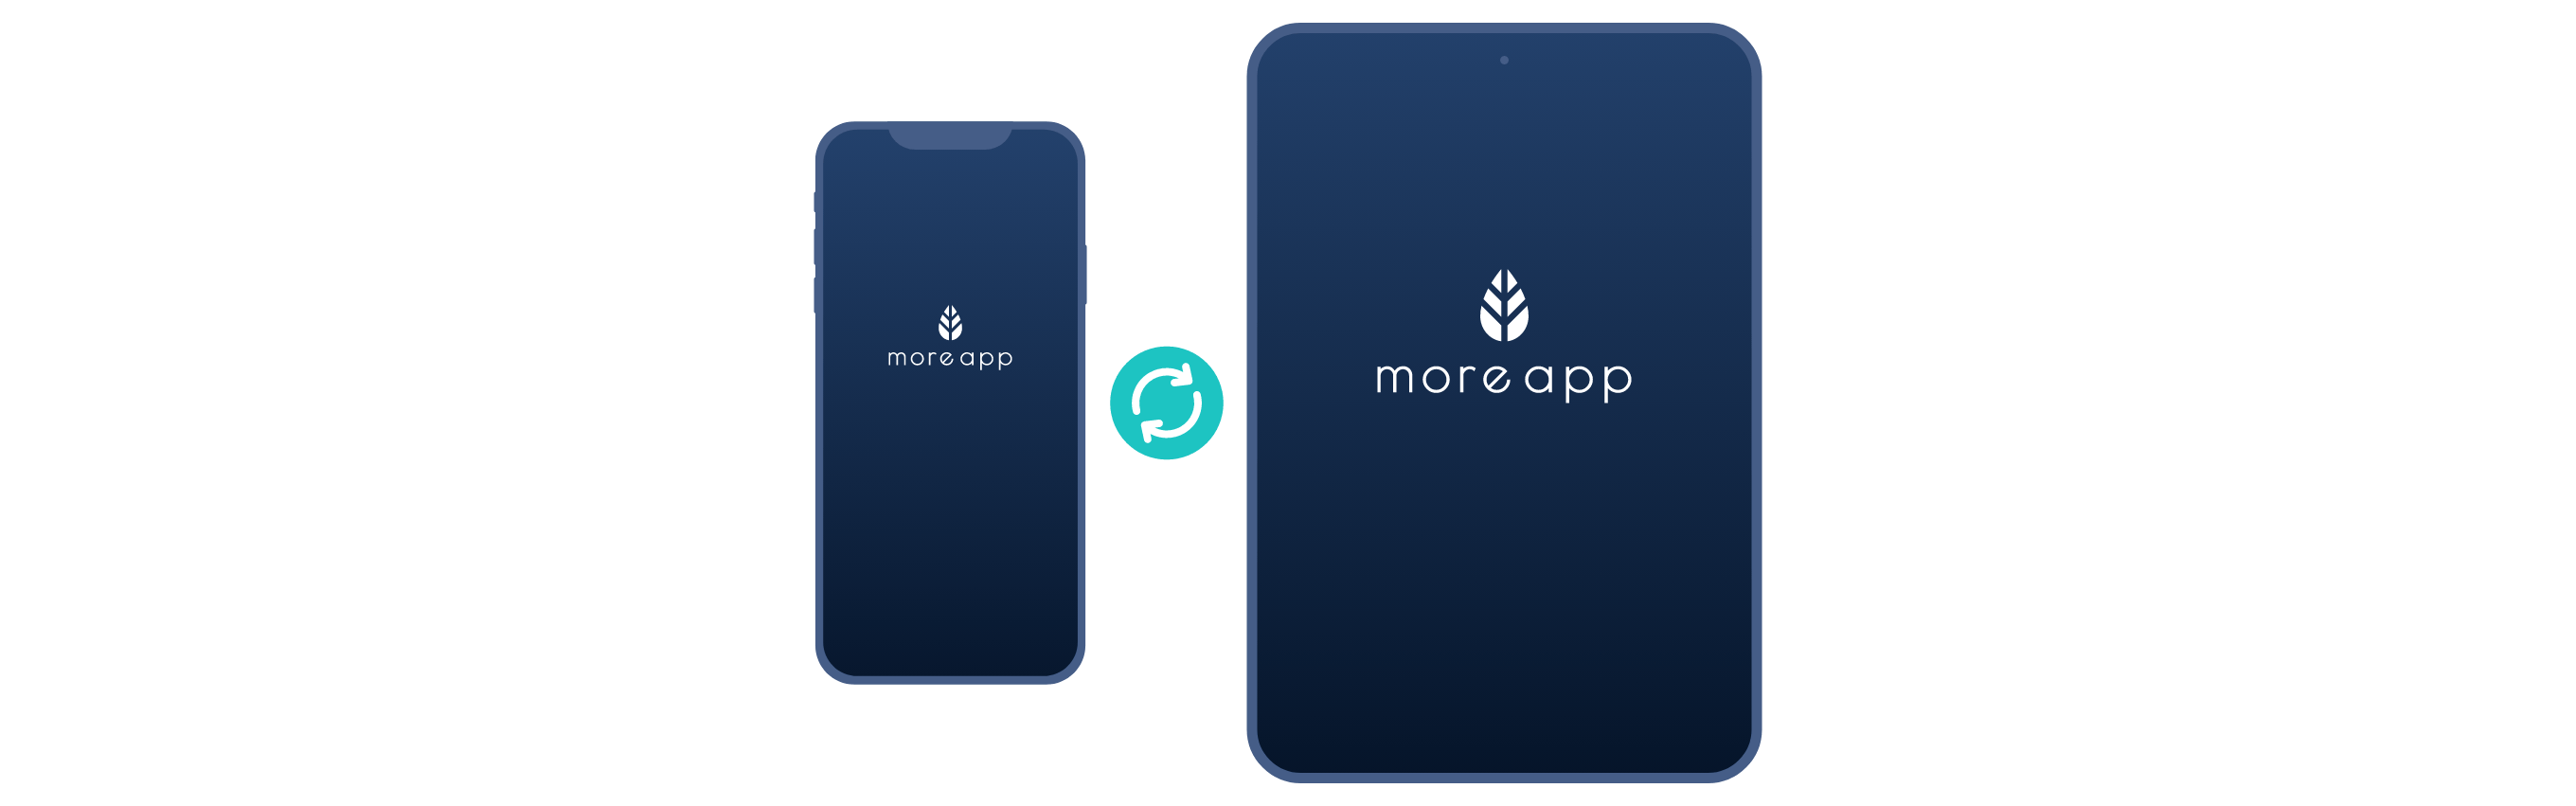 MoreApp digitale formulieren App